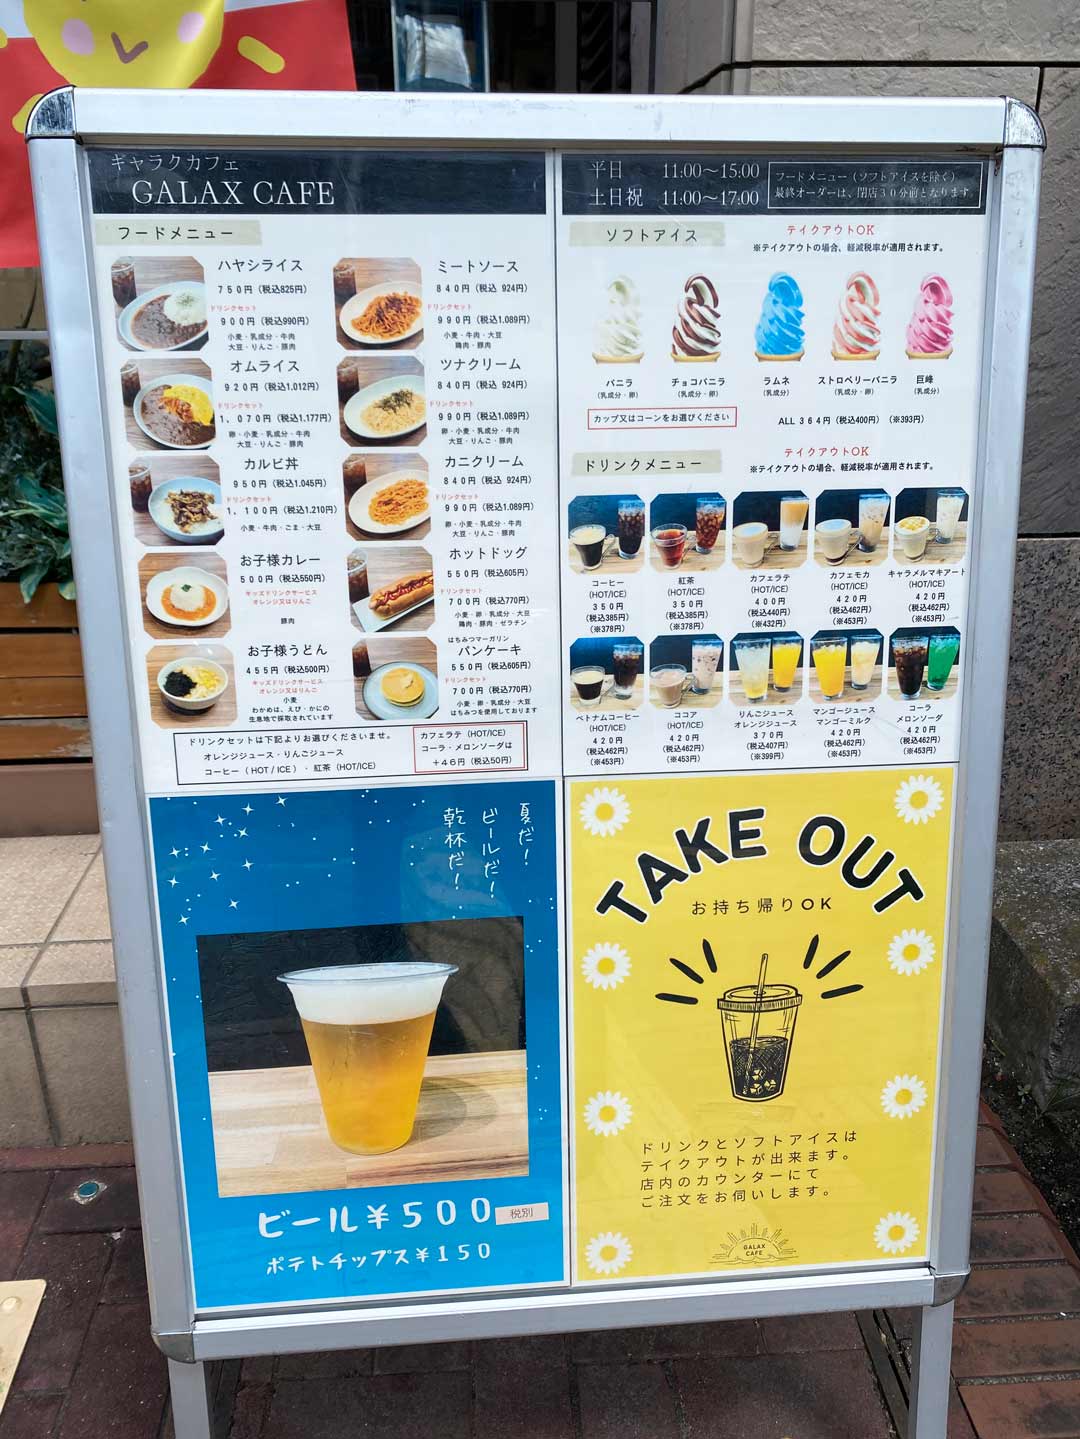 足立区 西新井 ギャラクシティ こども未来創造館 カフェ パスタ ソフトクリーム コーヒー ビール